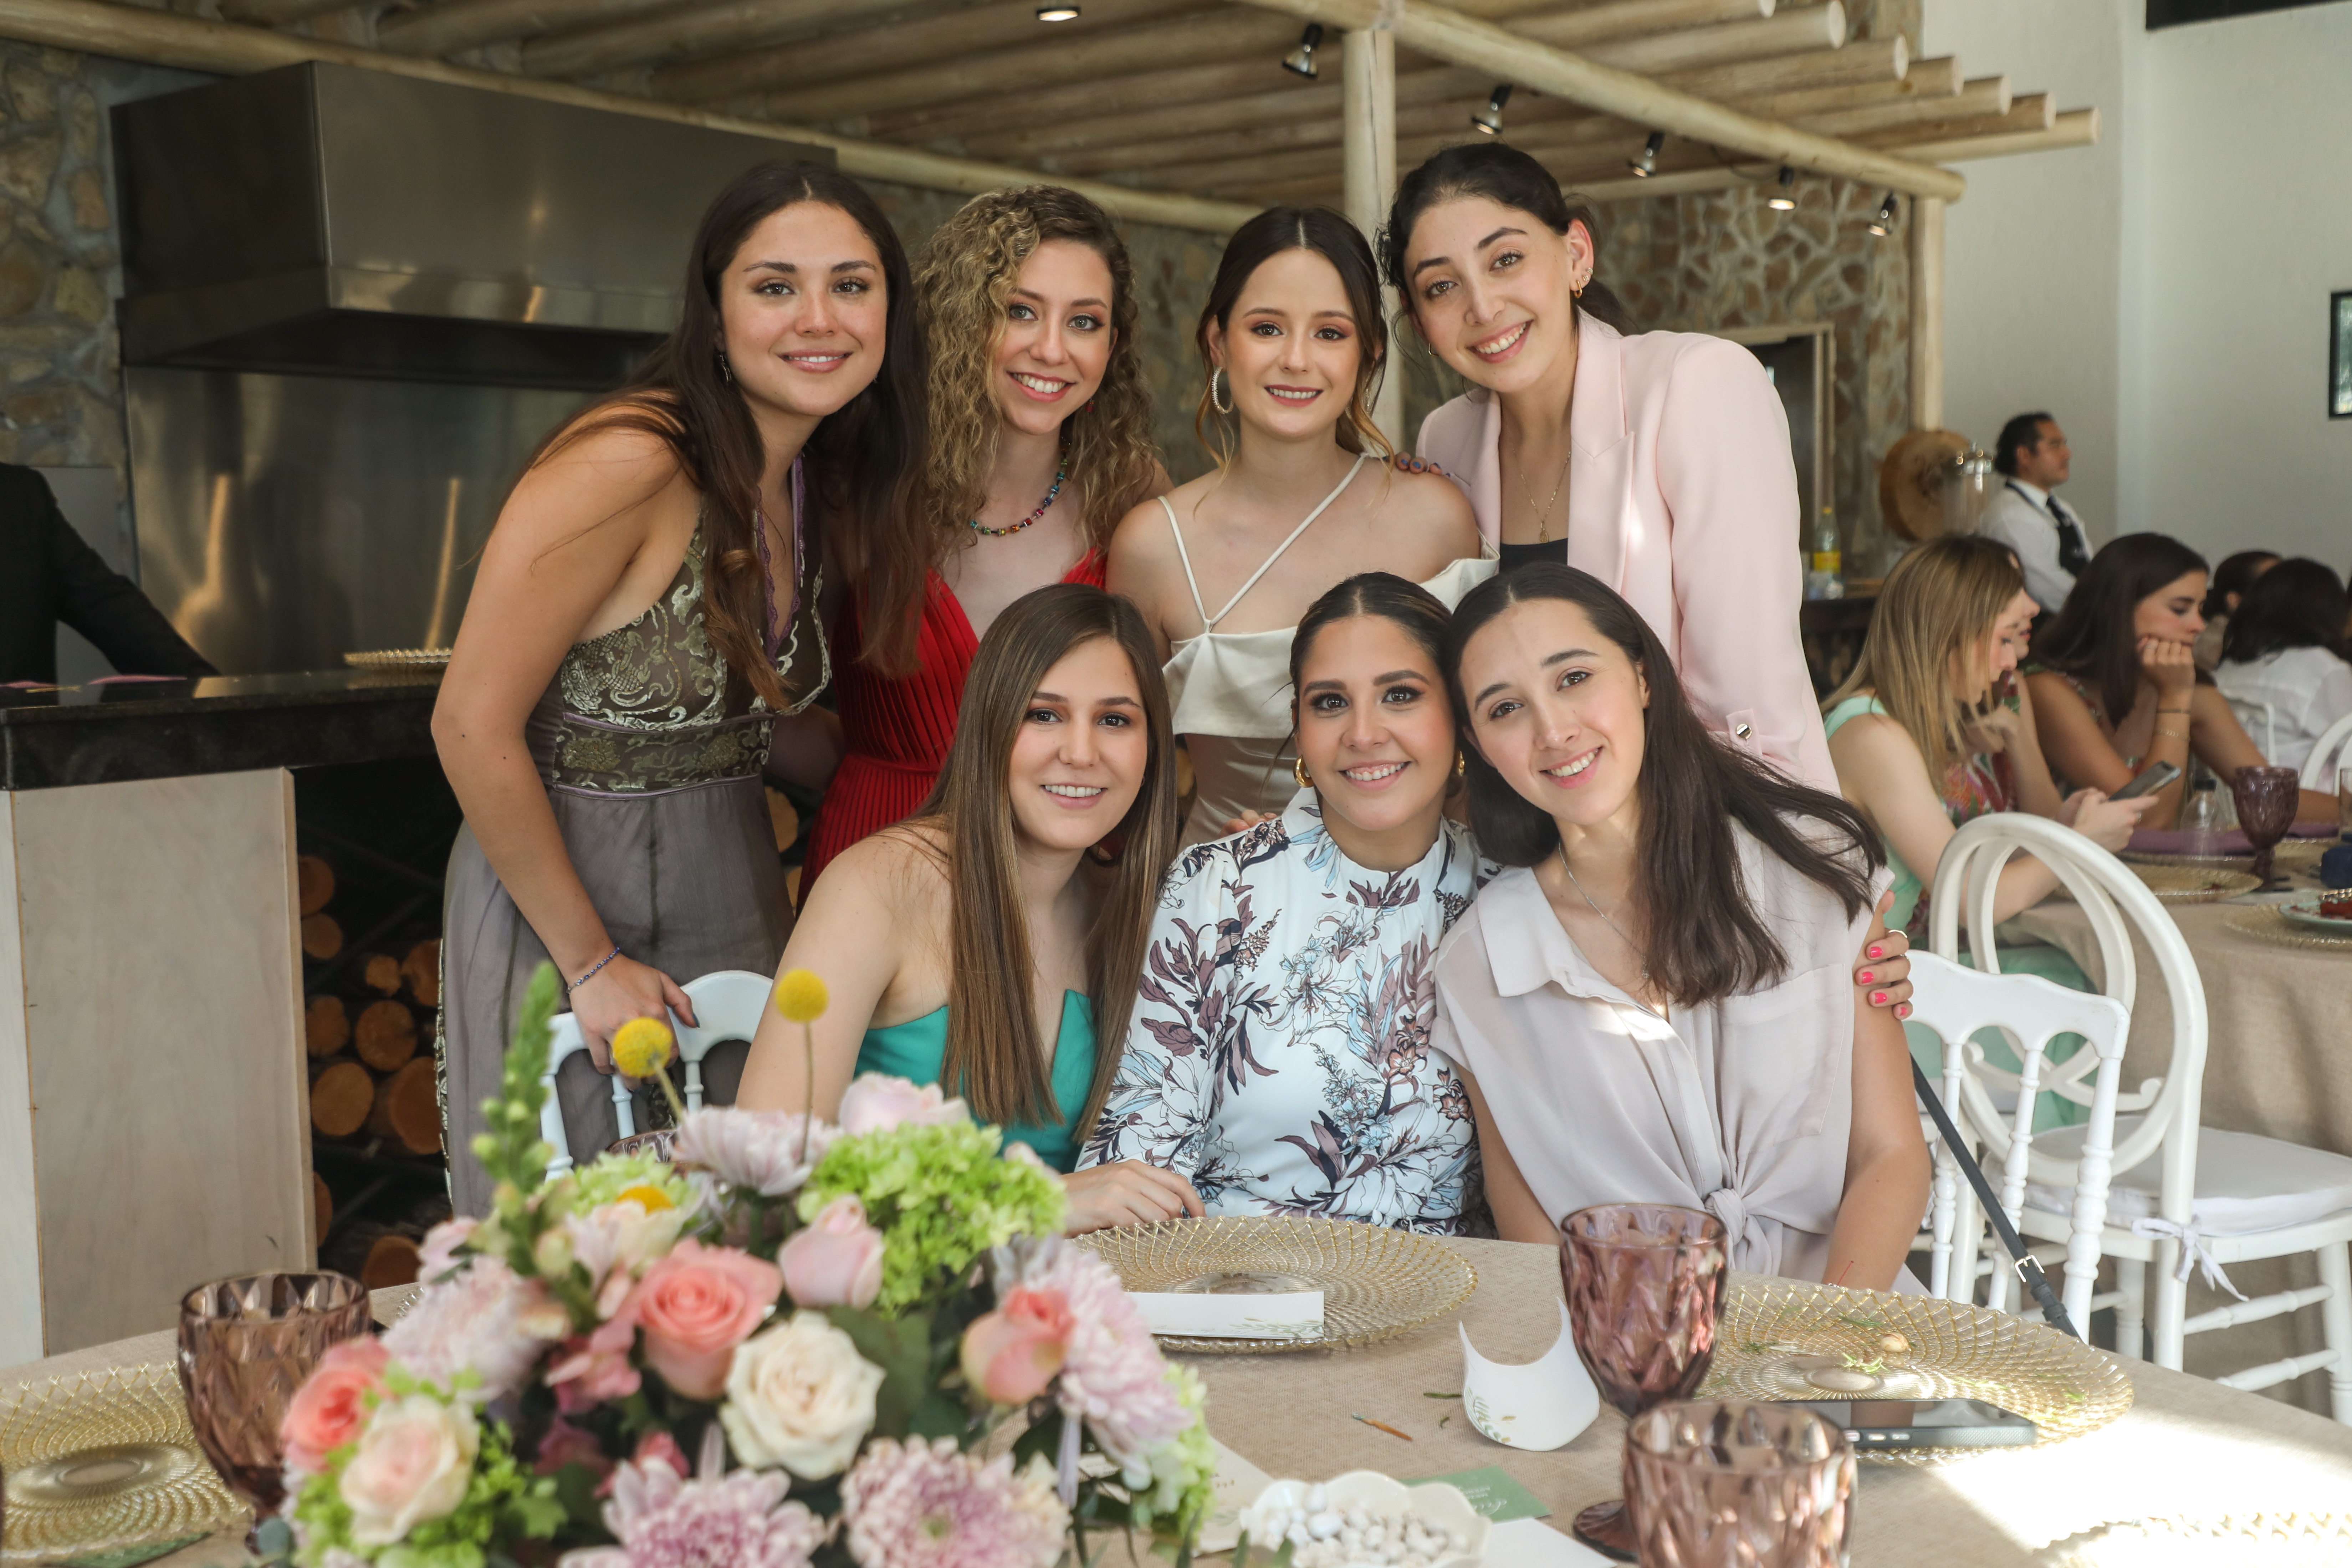 Jimena Xelhuantzi, Caro Covarrubias, Alicia Elizondo, María Aguilar, Gaby Moreno, Caro Salazar y María Paula Rosado.